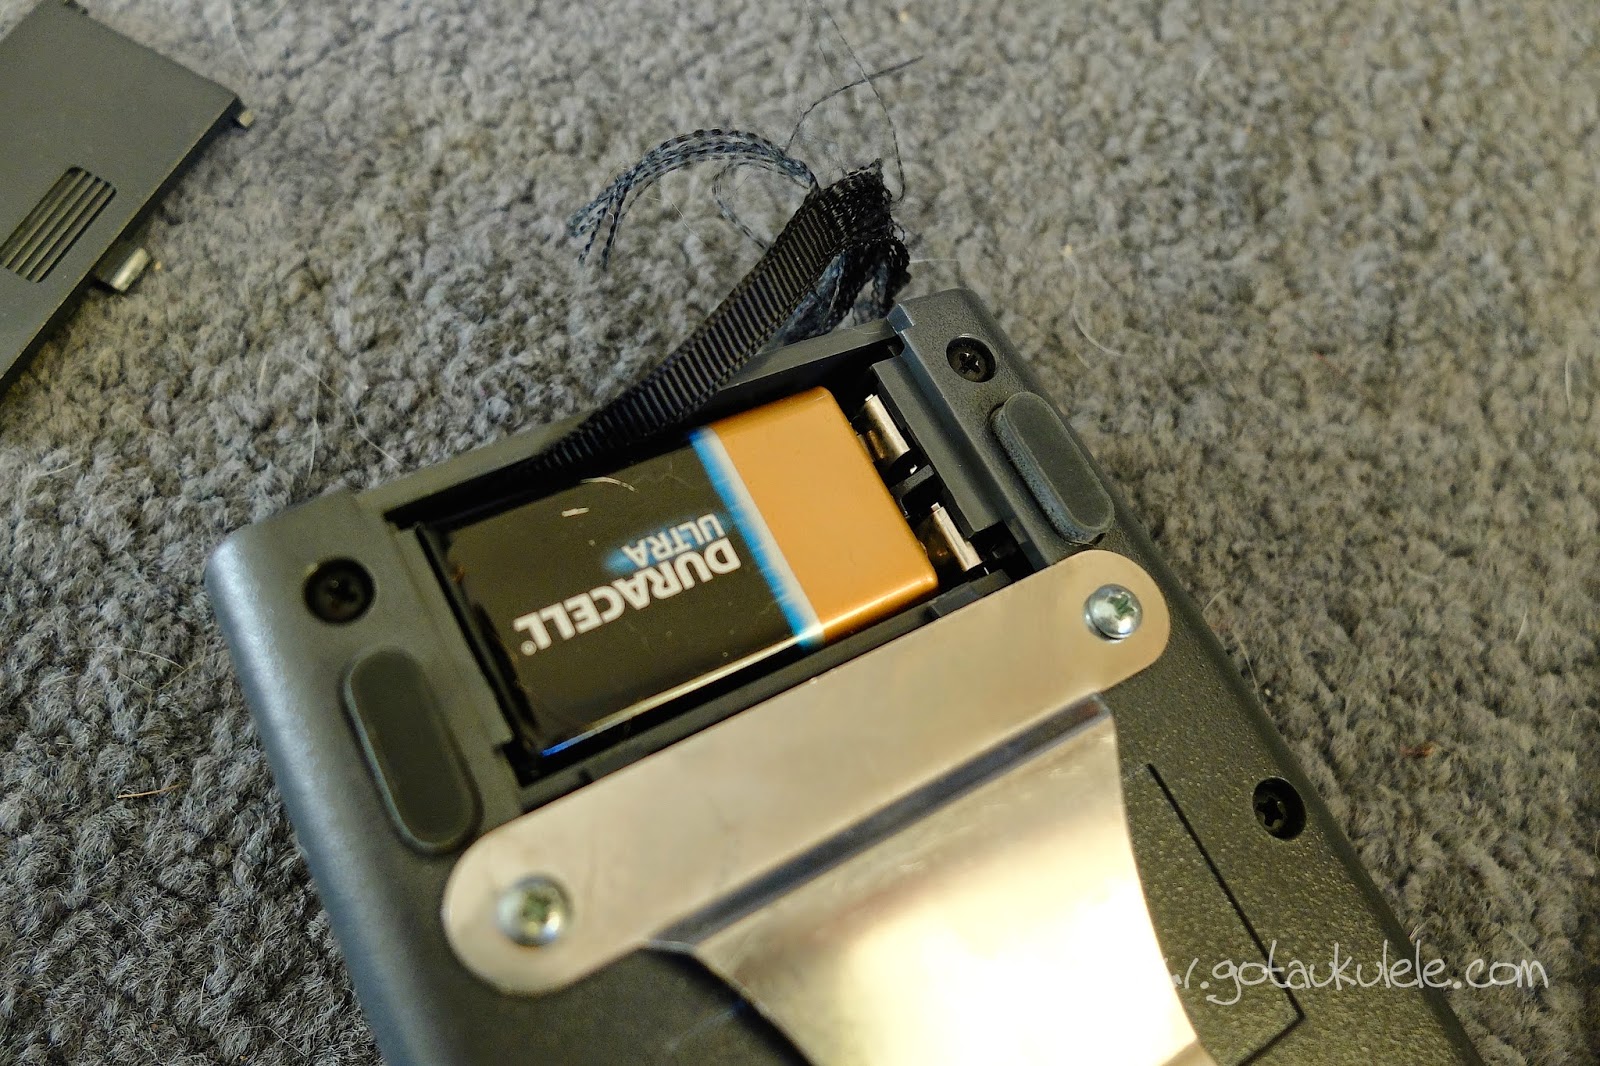 Fishman Pro EQ II box battery compartment